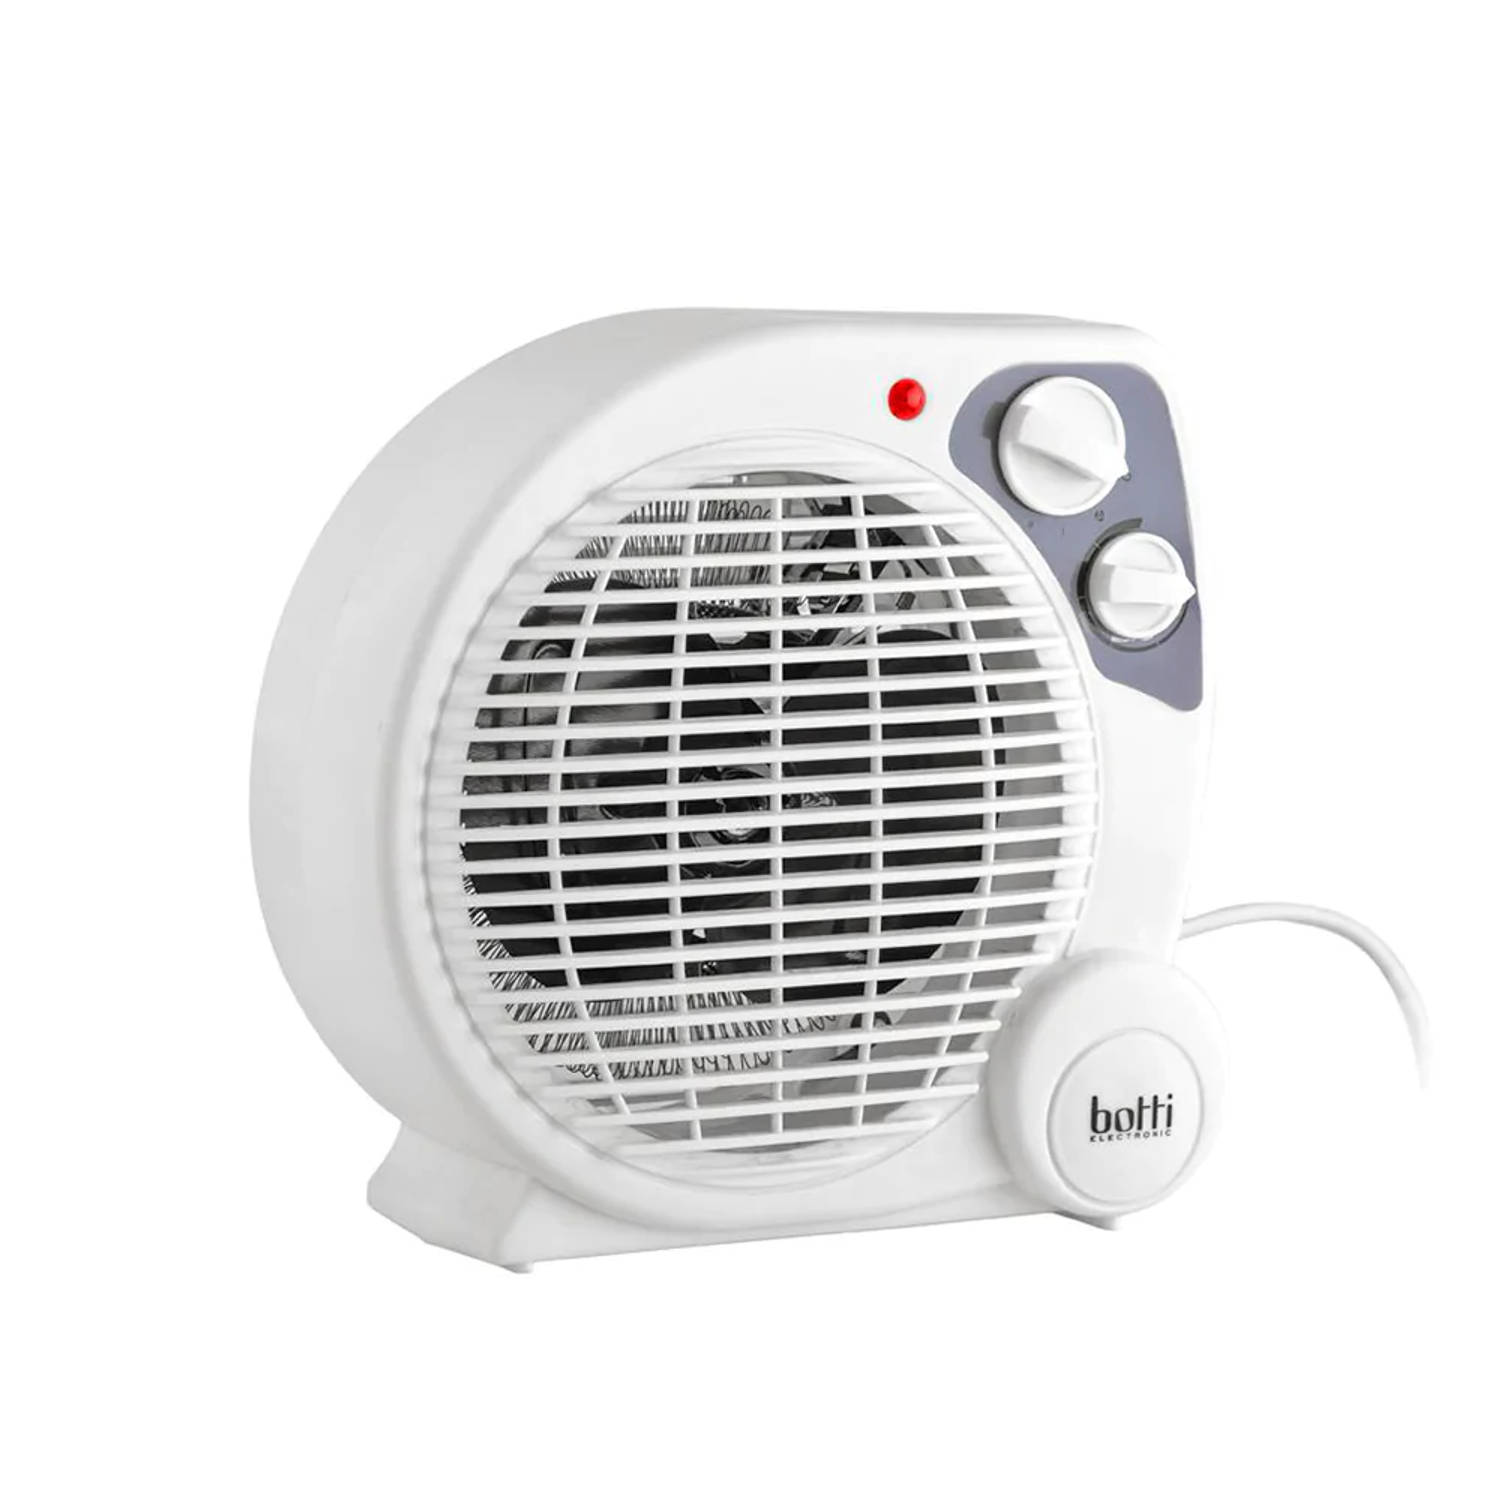 Botti Caldo ventilatorkachel 3 standen voor koud en warm - elektrische kachel - heater - 2000W wit